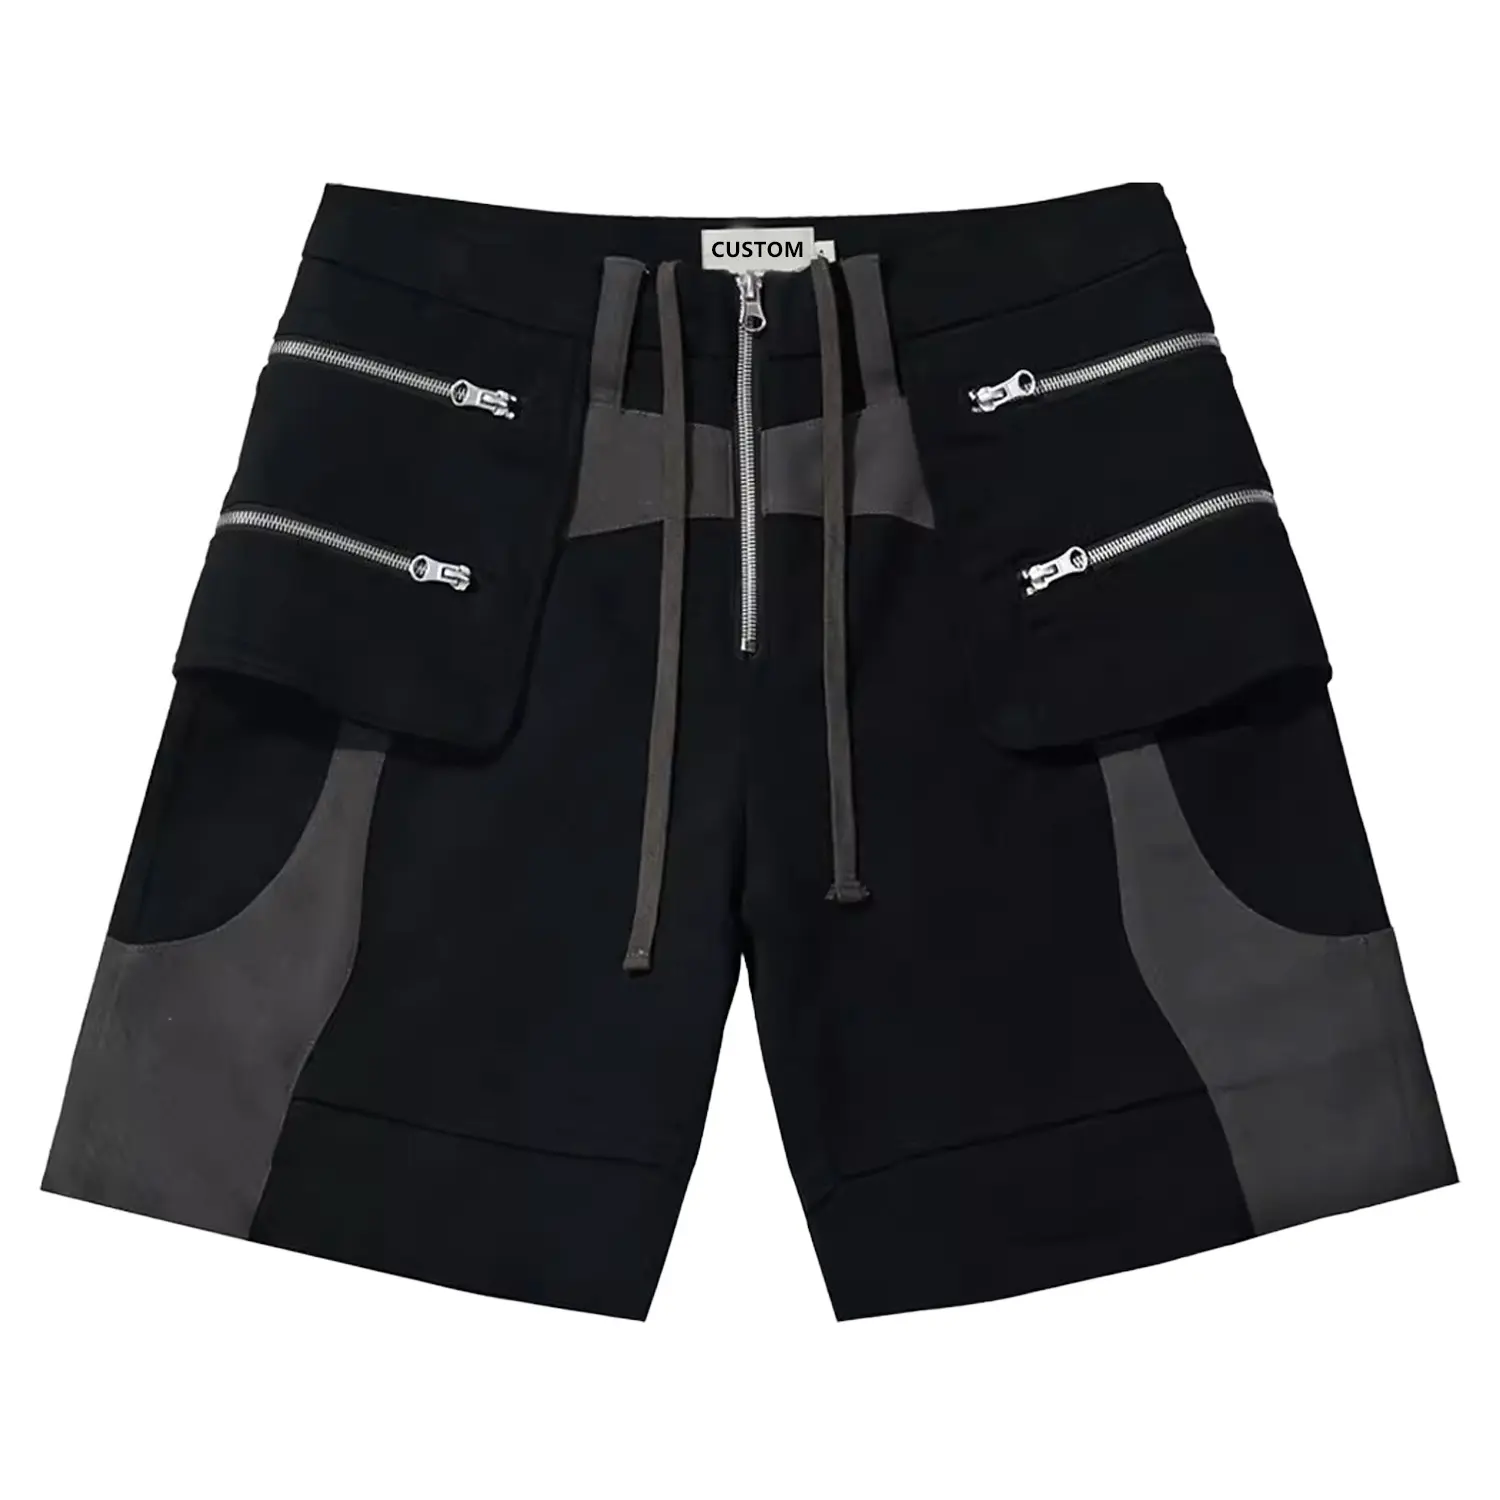 Großhandel individuelle hohe qualität Herrenshorts Baggy farbig-passend reißverschluss tasche sommer shorts herren athletische shorts für herren